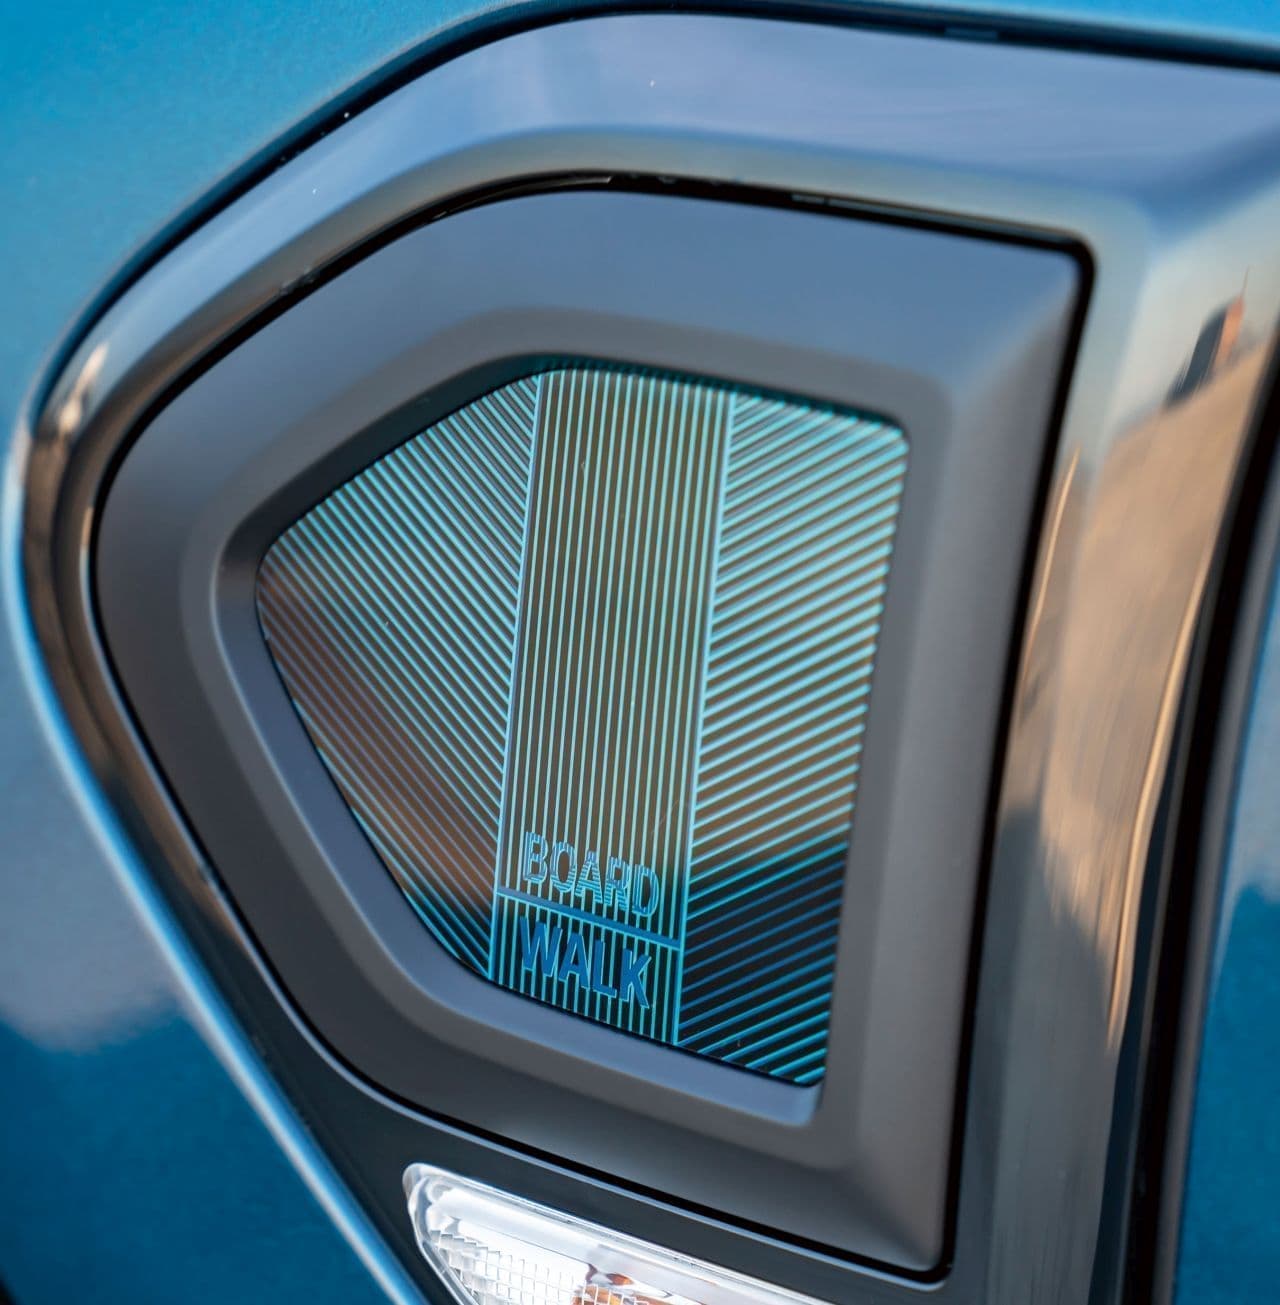 MINI Crossoverに特別なブルーの限定車「ボードウォーク・エディション」